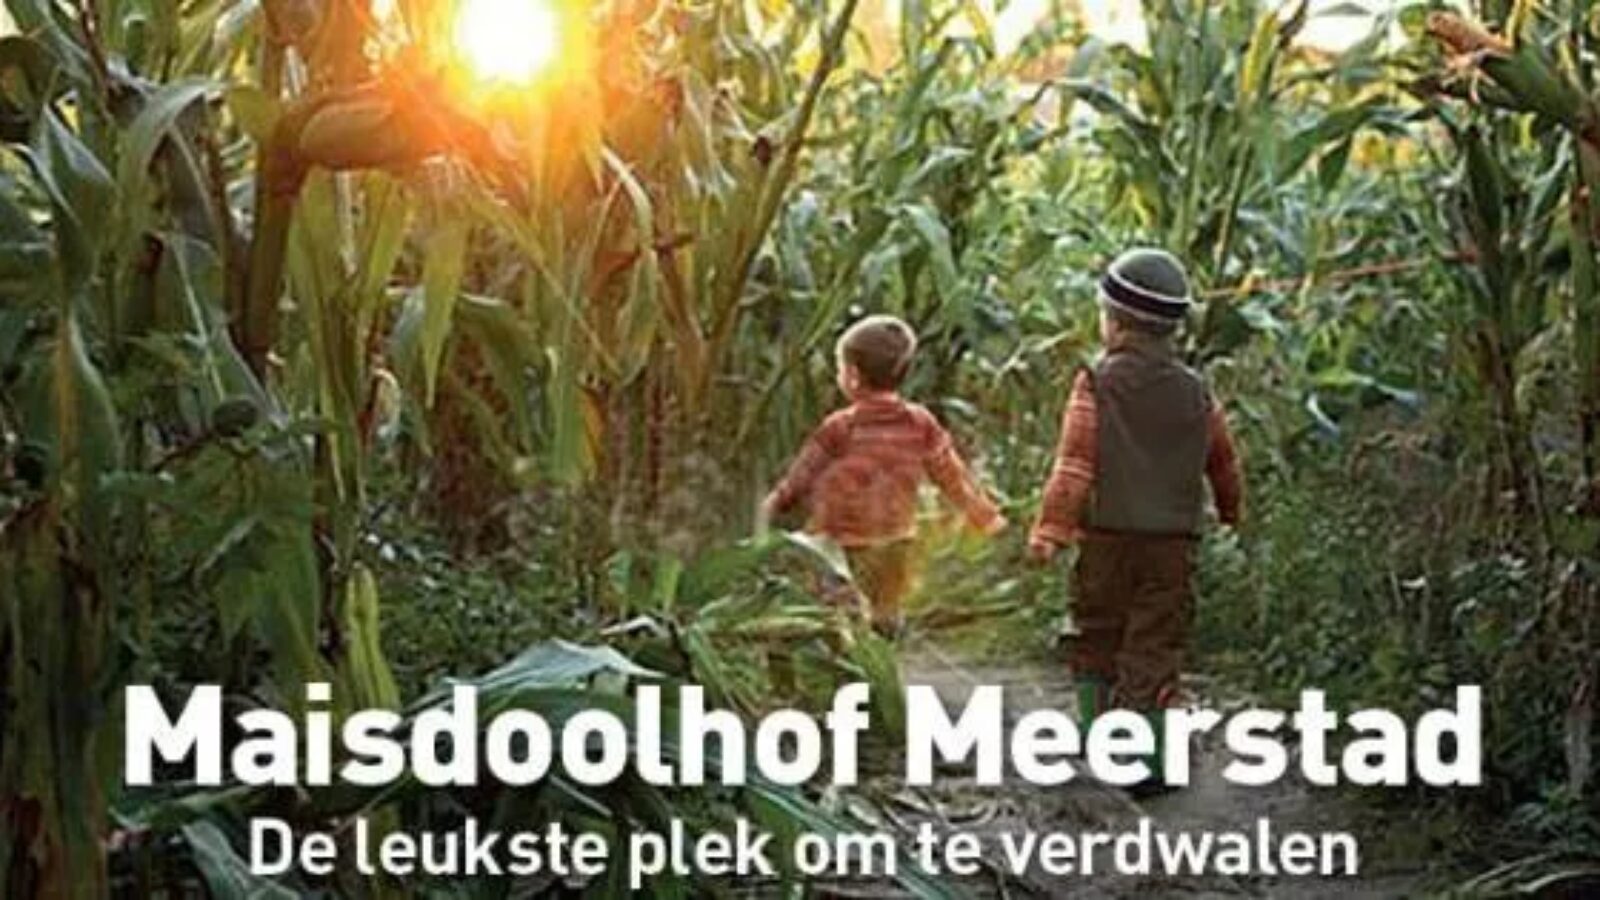 Maisdoolhof Meerstad is weer verrezen!